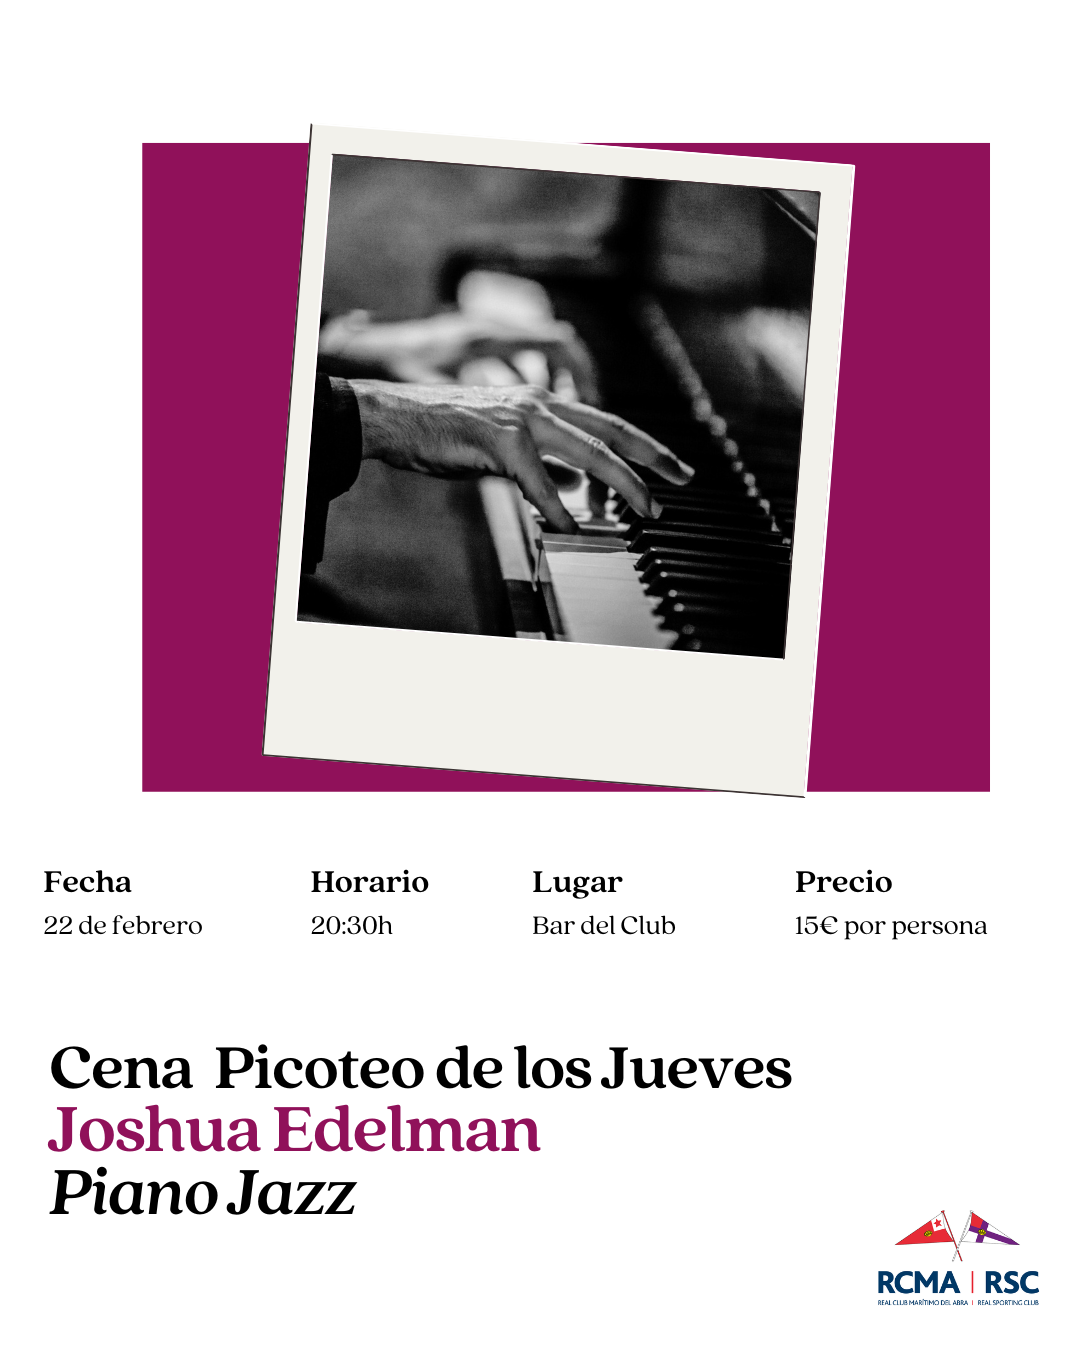 PICOTEO DE LOS JUEVES con Joshua Edelman este jueves 22 de febrero - 